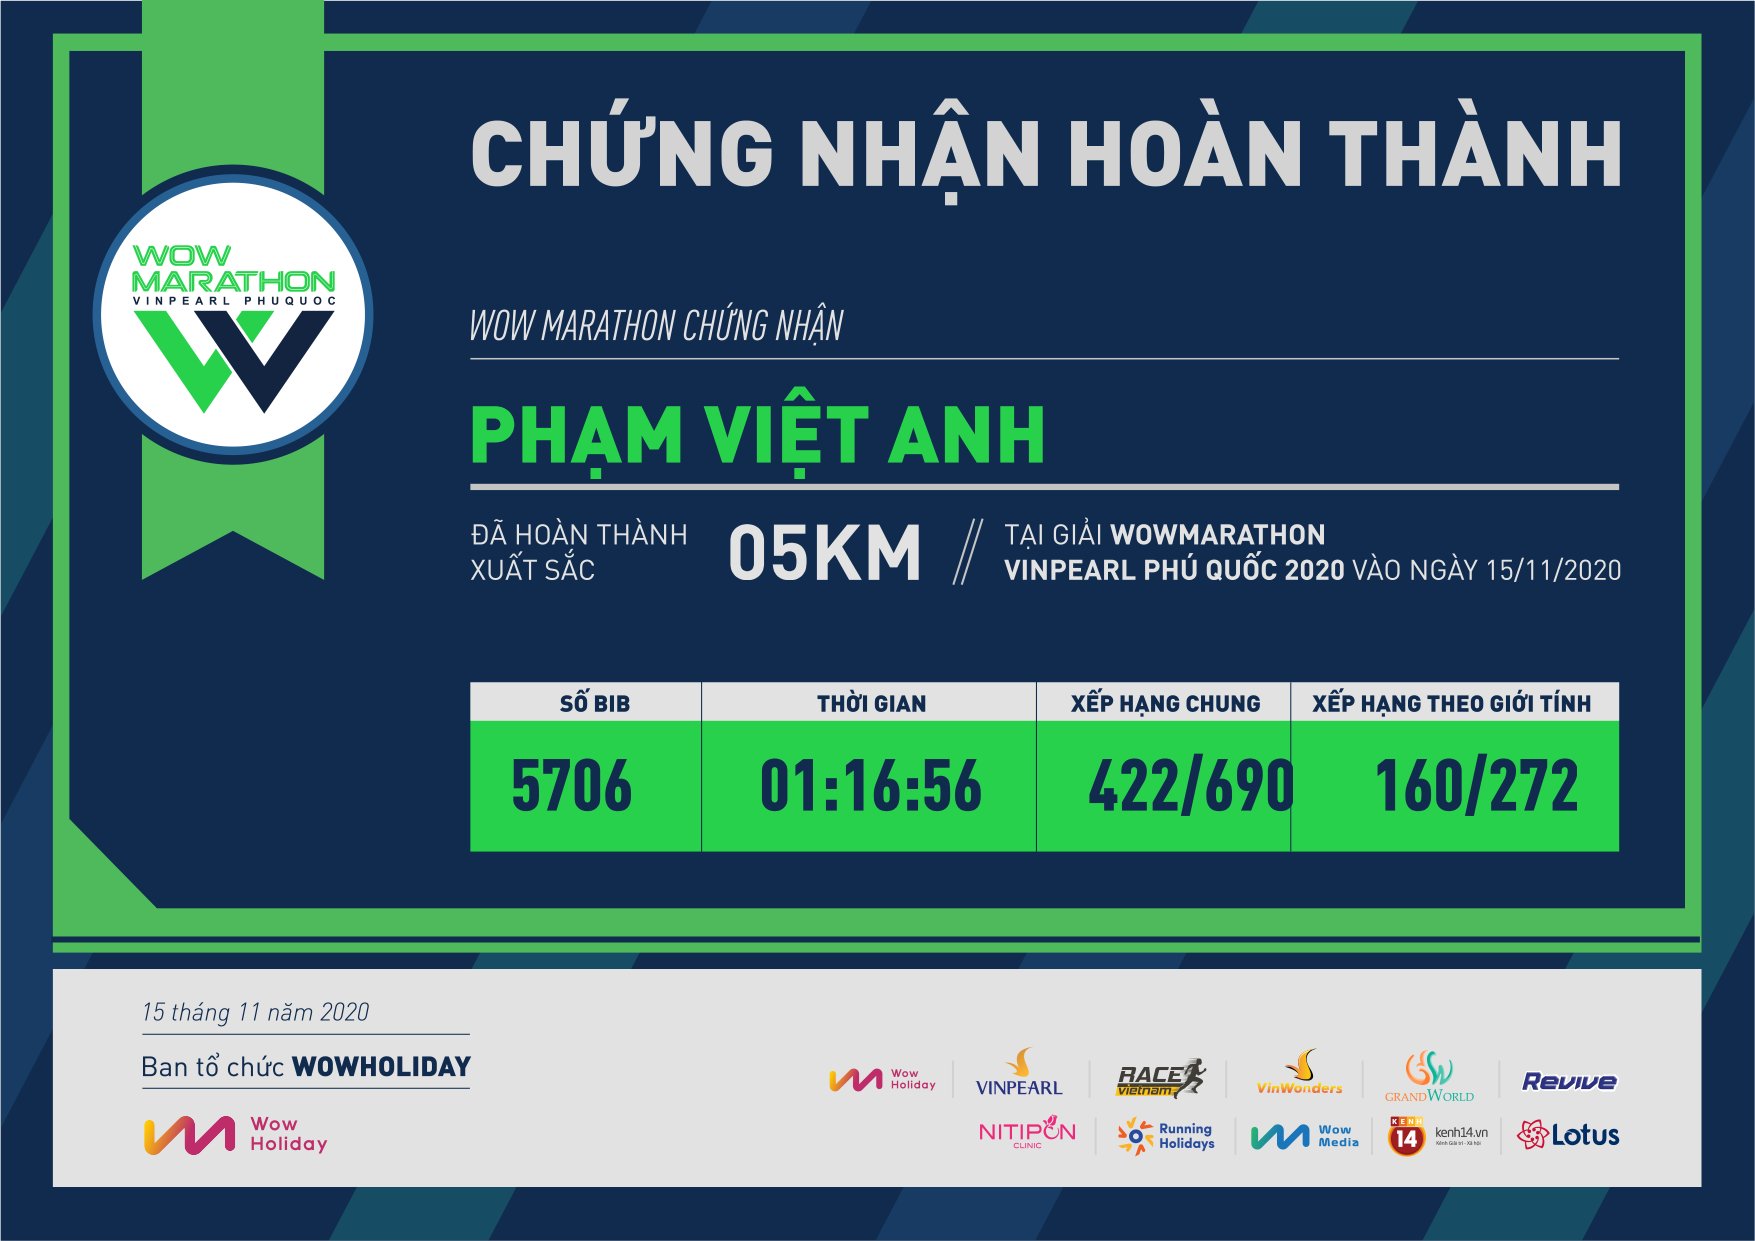 5706 - Phạm Việt Anh